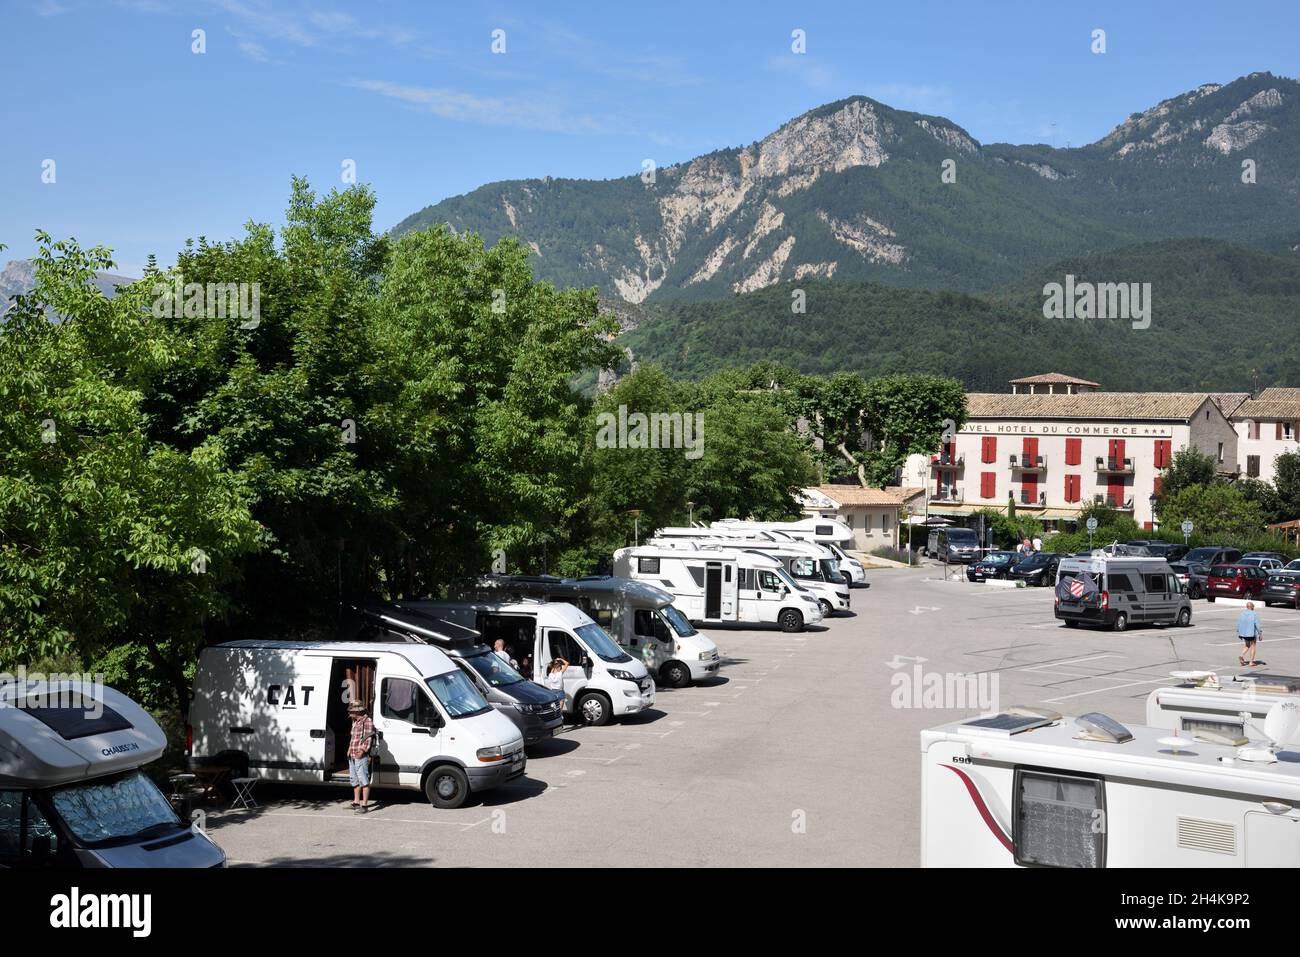 Parkplatz oder Parkplatz, auch zum Übernachten für Camping Cars, Campervans oder Caravans Castellane Provence Frankreich Stockfoto